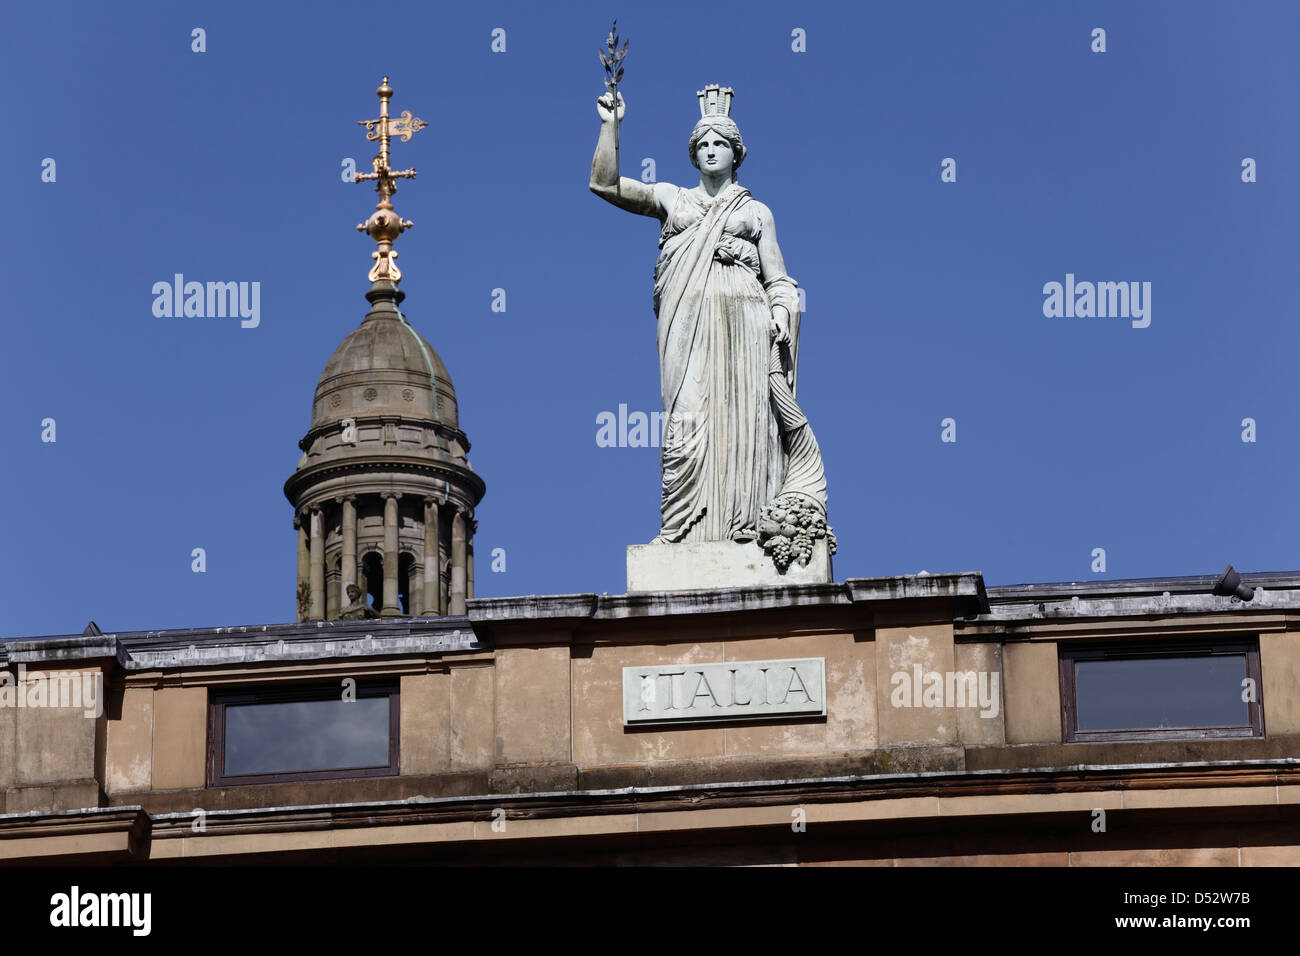 La statua neoclassica Italia di Alexander Stoddart sopra il centro italiano, Ingram Street, Glasgow centro città, Scozia, Regno Unito Foto Stock